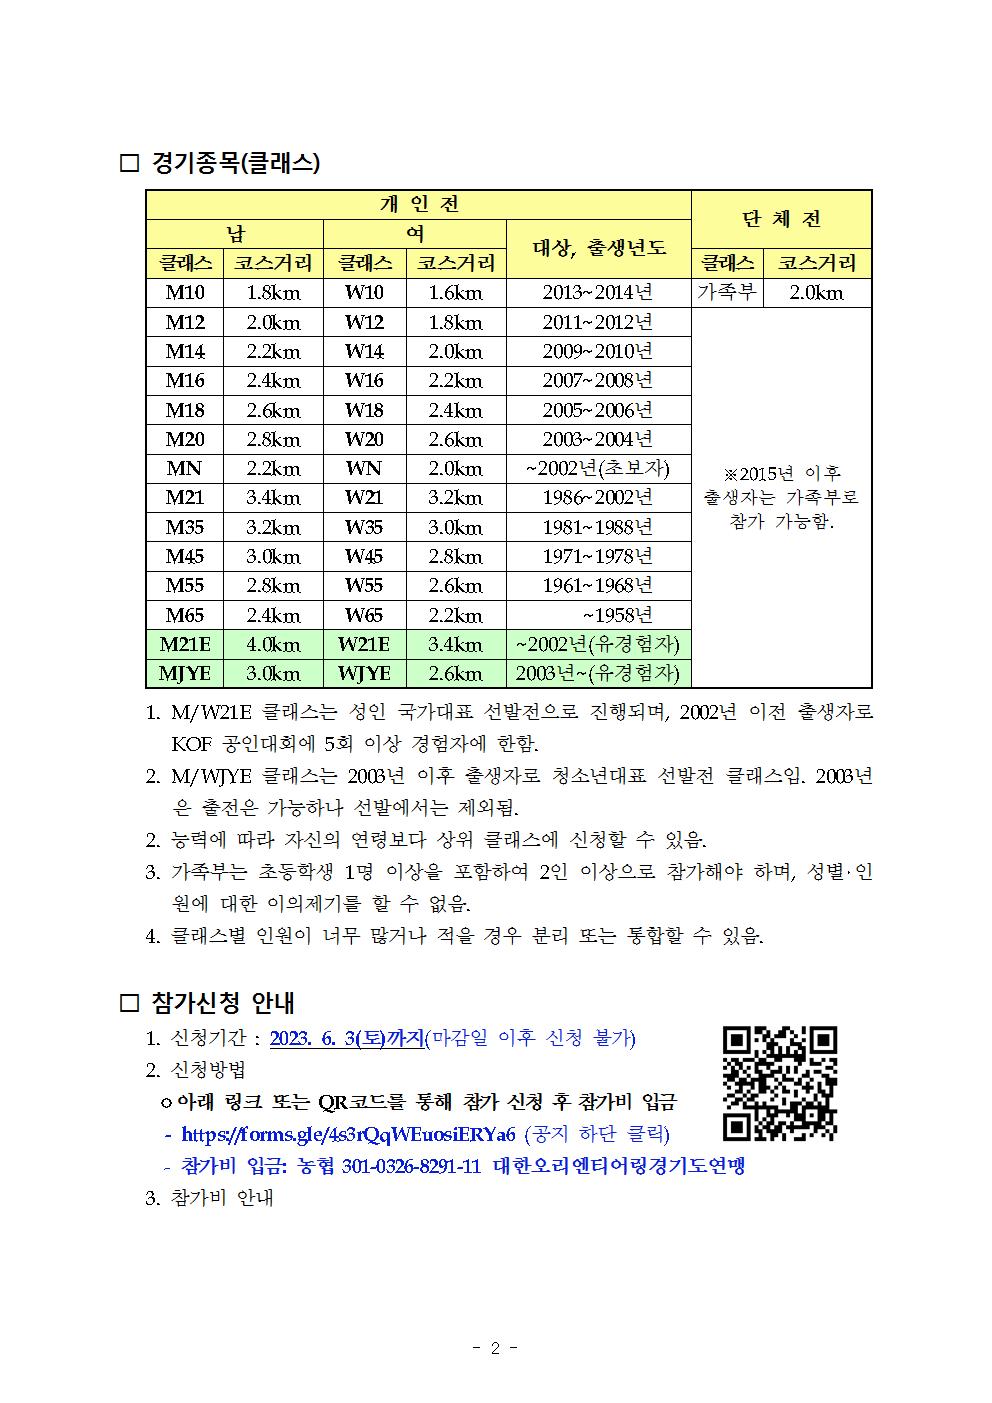 제15회 경기도연맹 전국 오리엔티어링대회 공지 (1)002.jpg